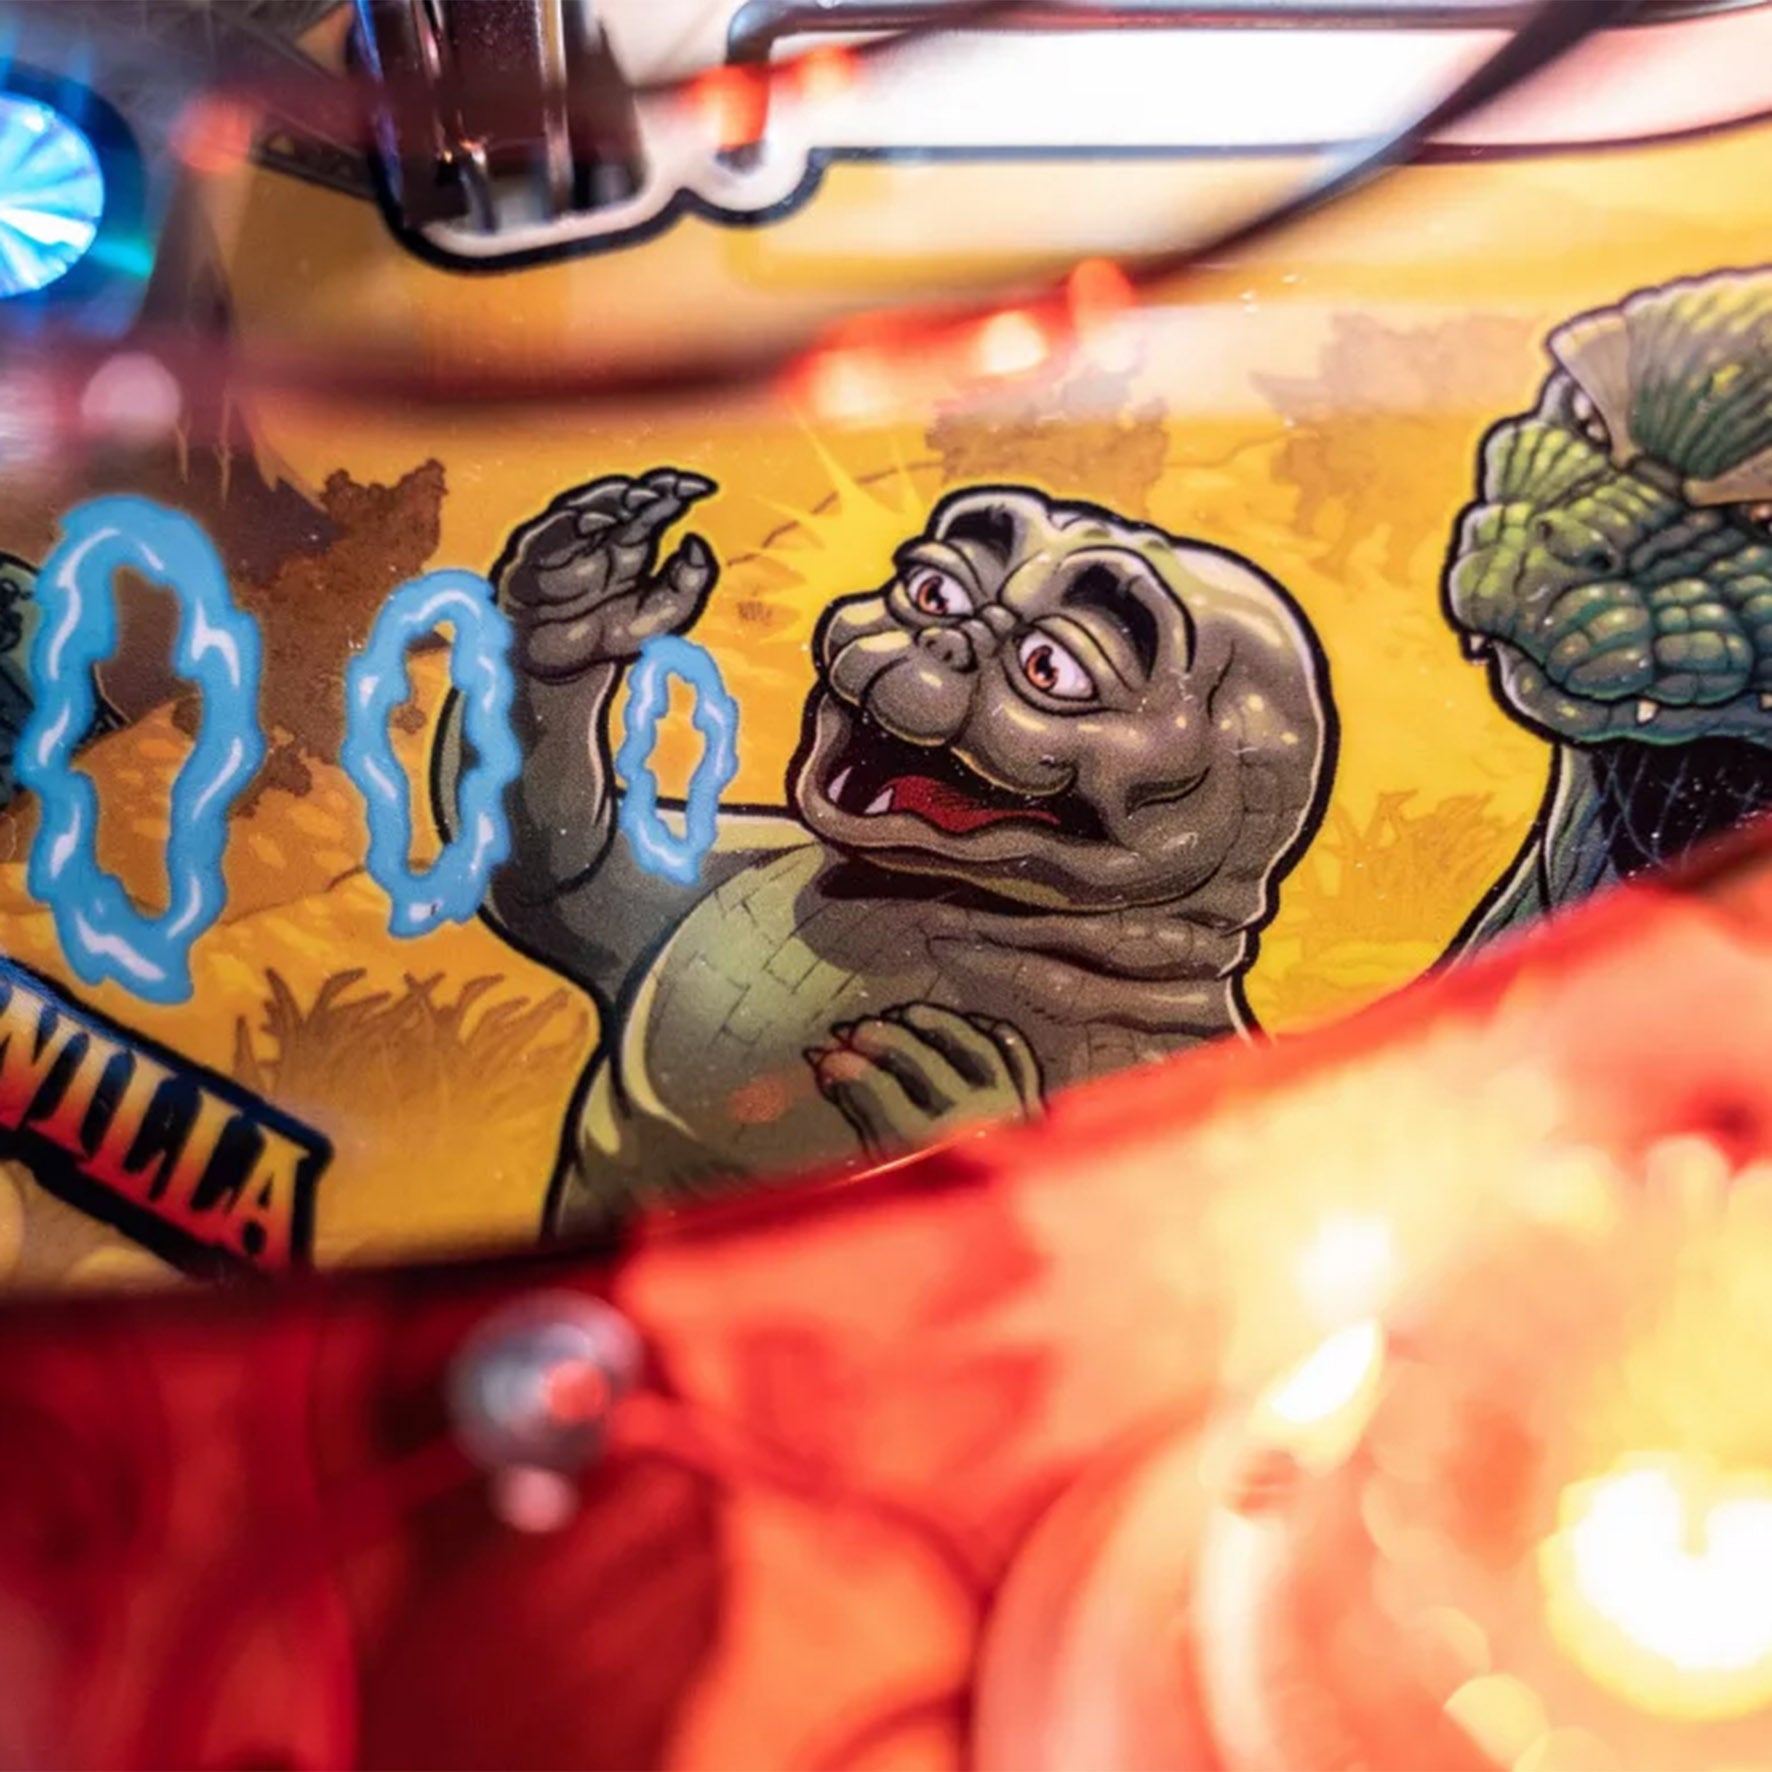 2021 Godzilla Pro Pinball Machine  by Stern